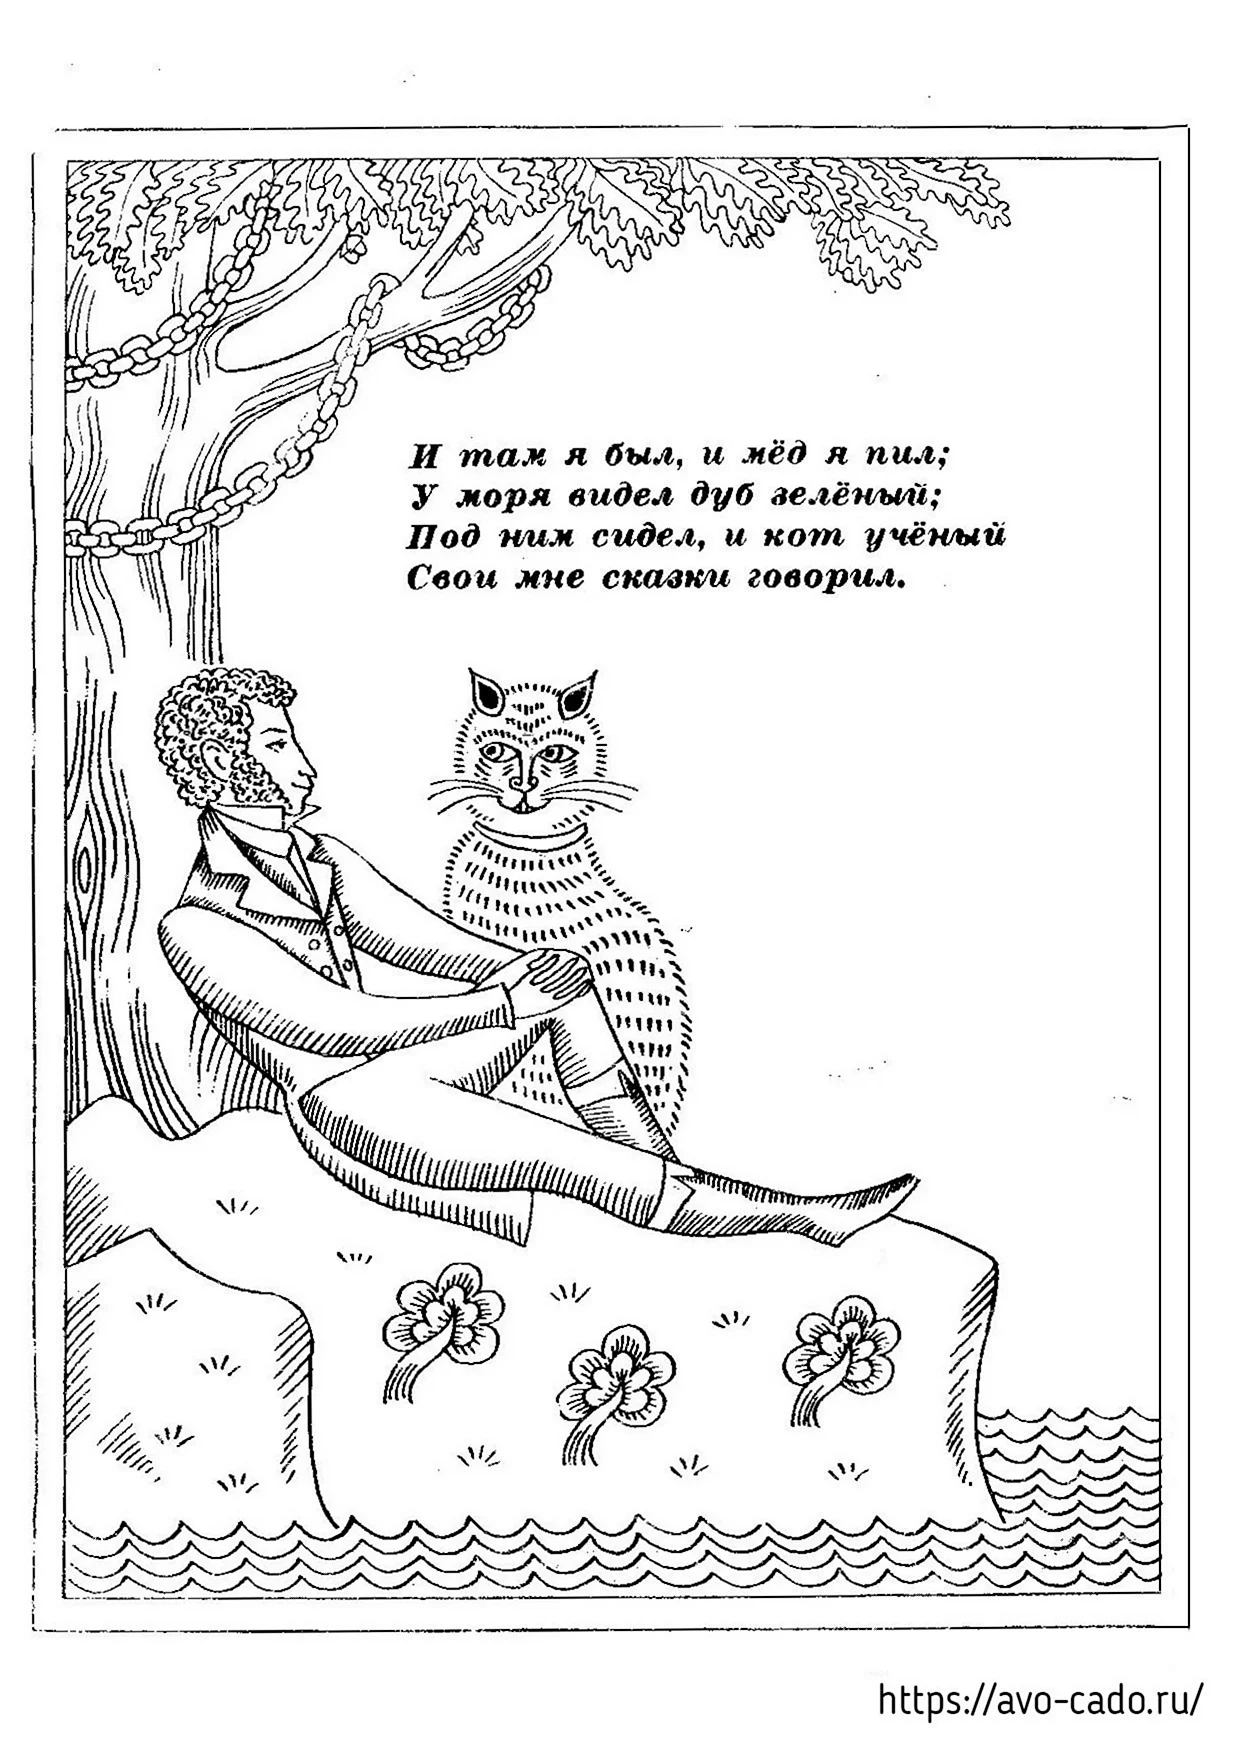 Кот ученый Пушкин раскраска. Для срисовки